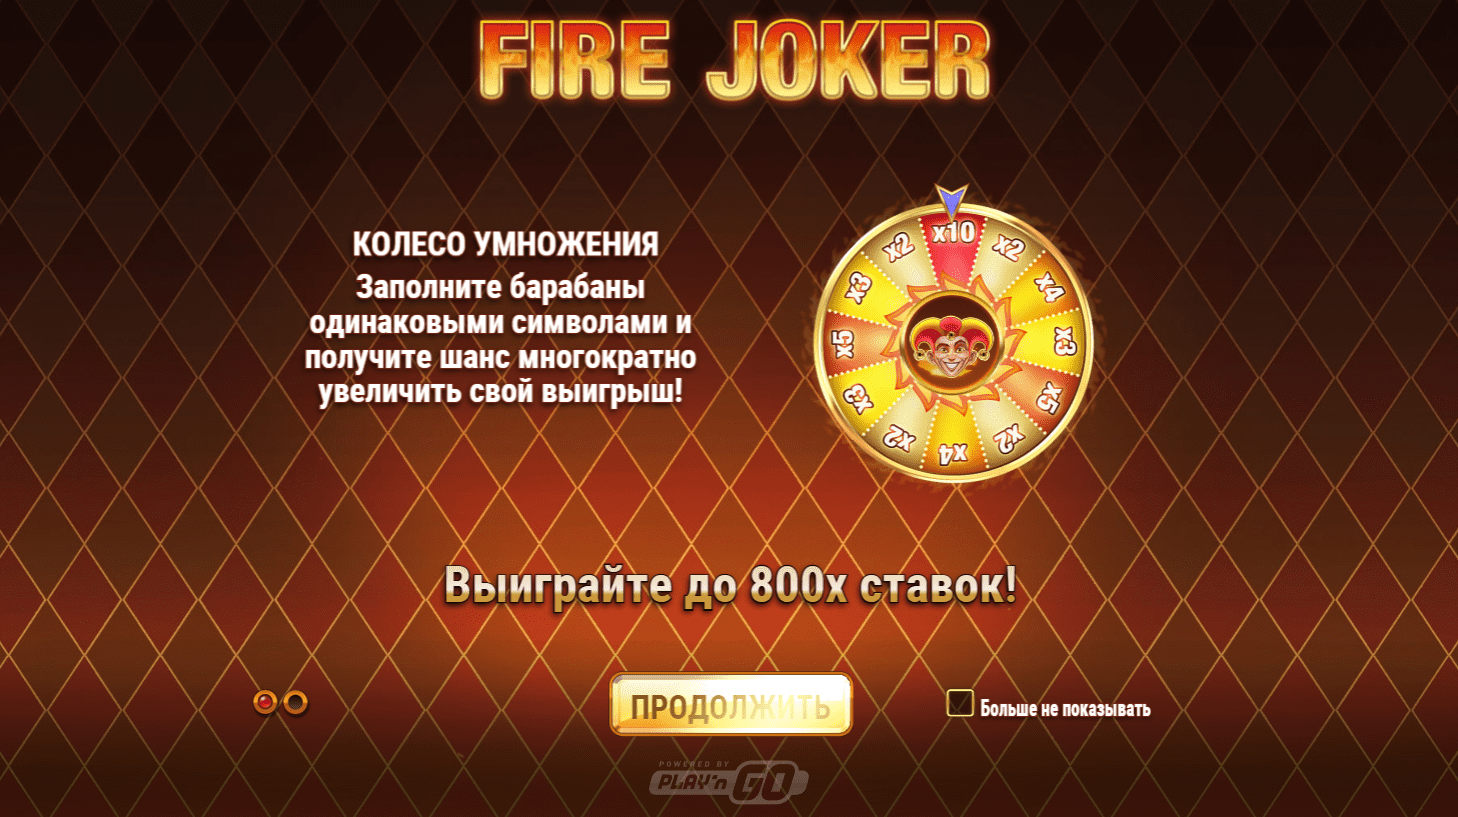 Fire joker hoofdsymbolen